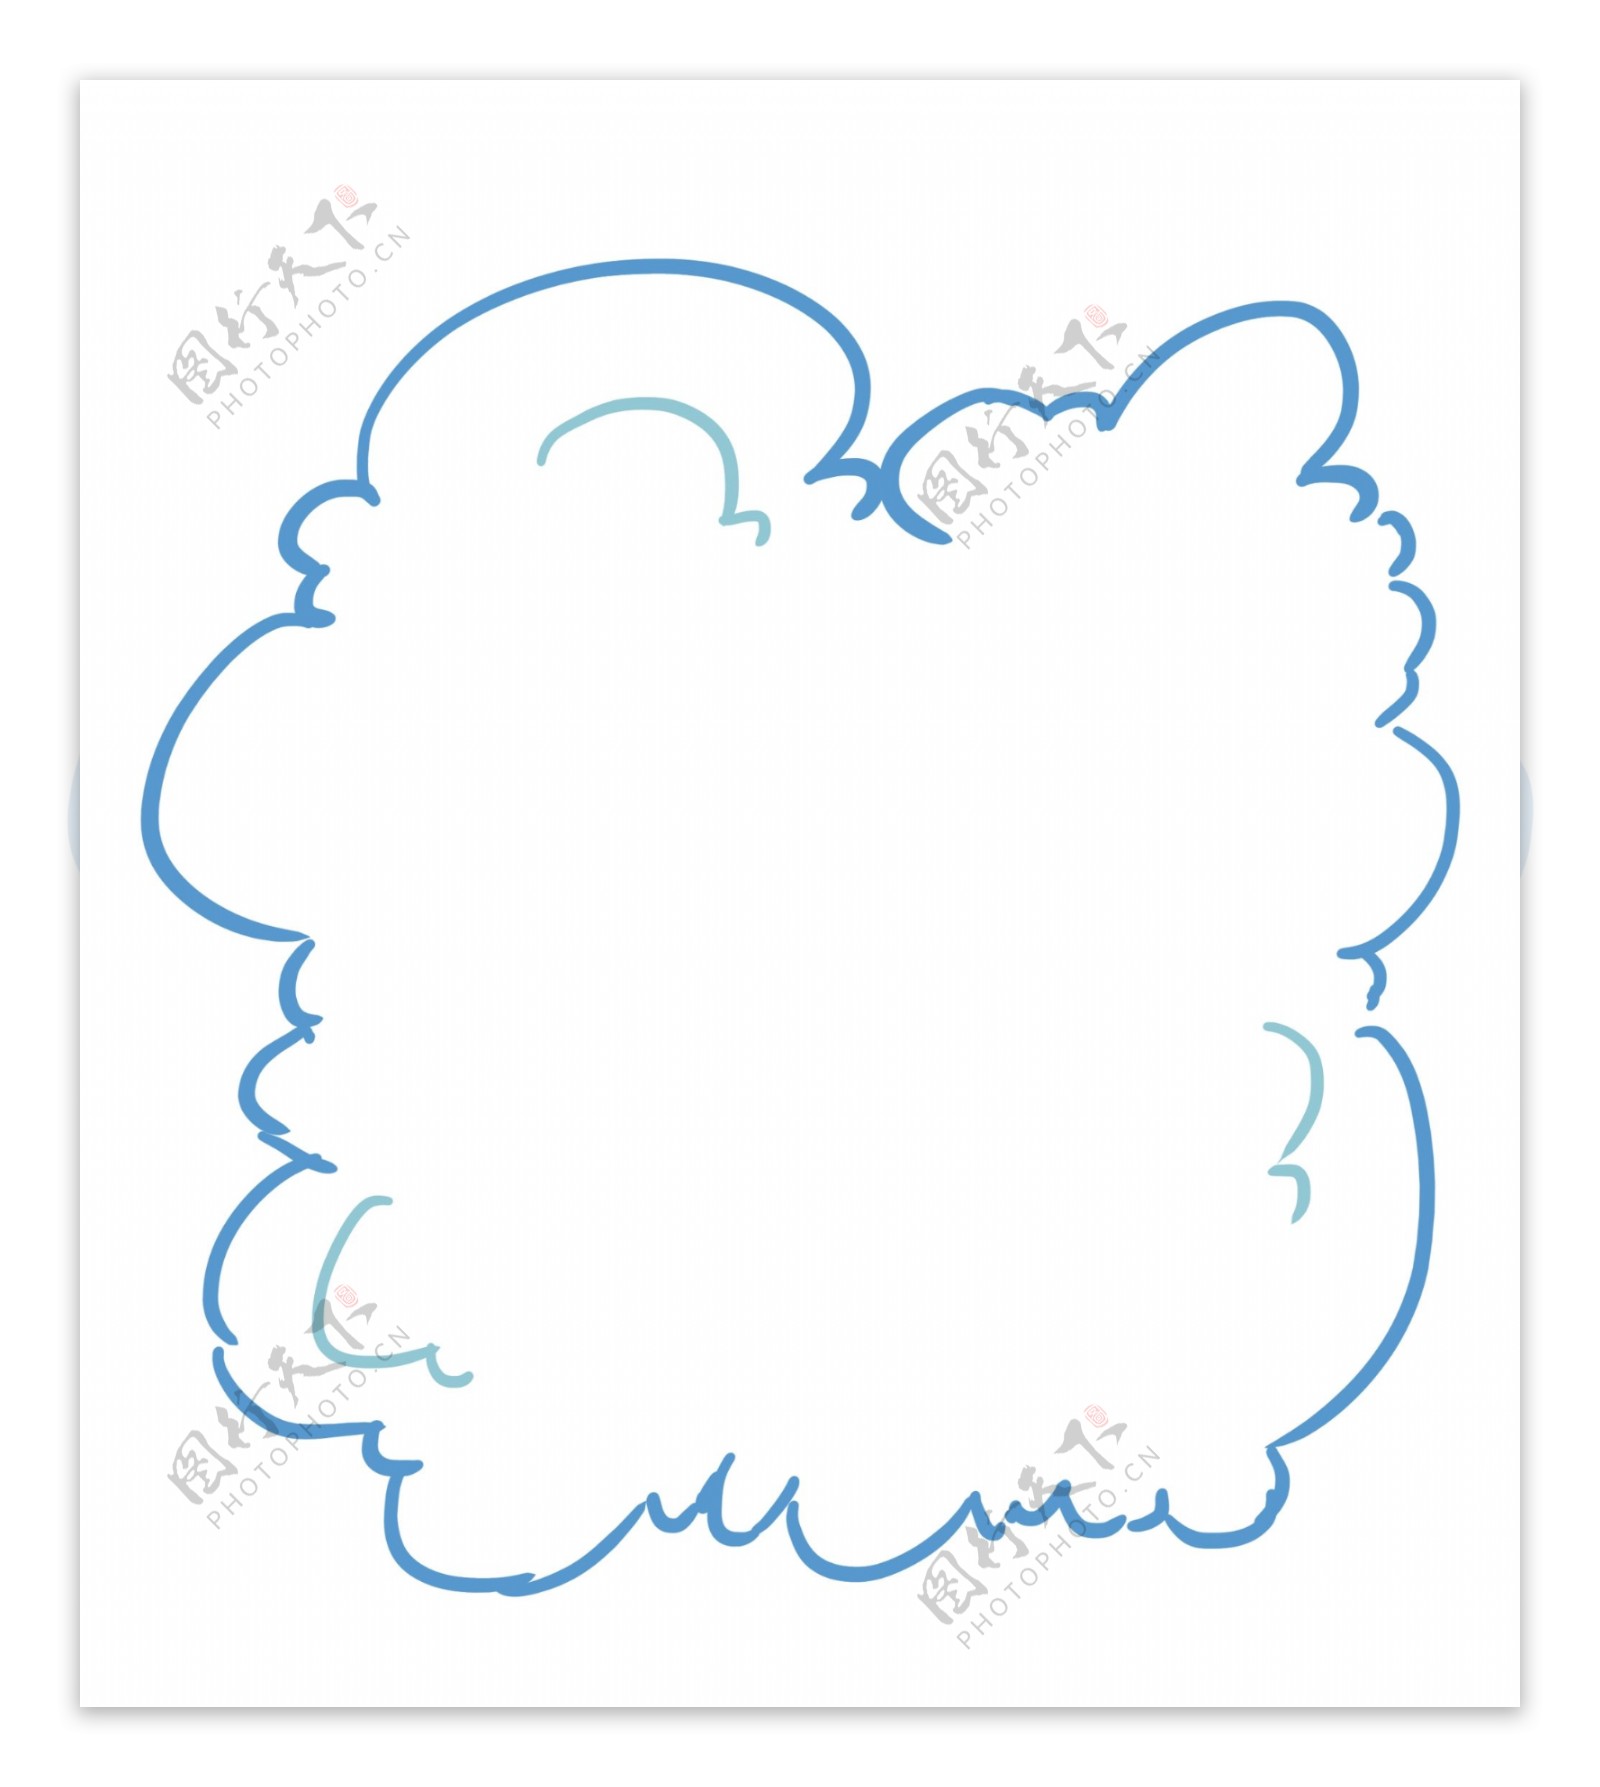 蓝色云朵图案插图